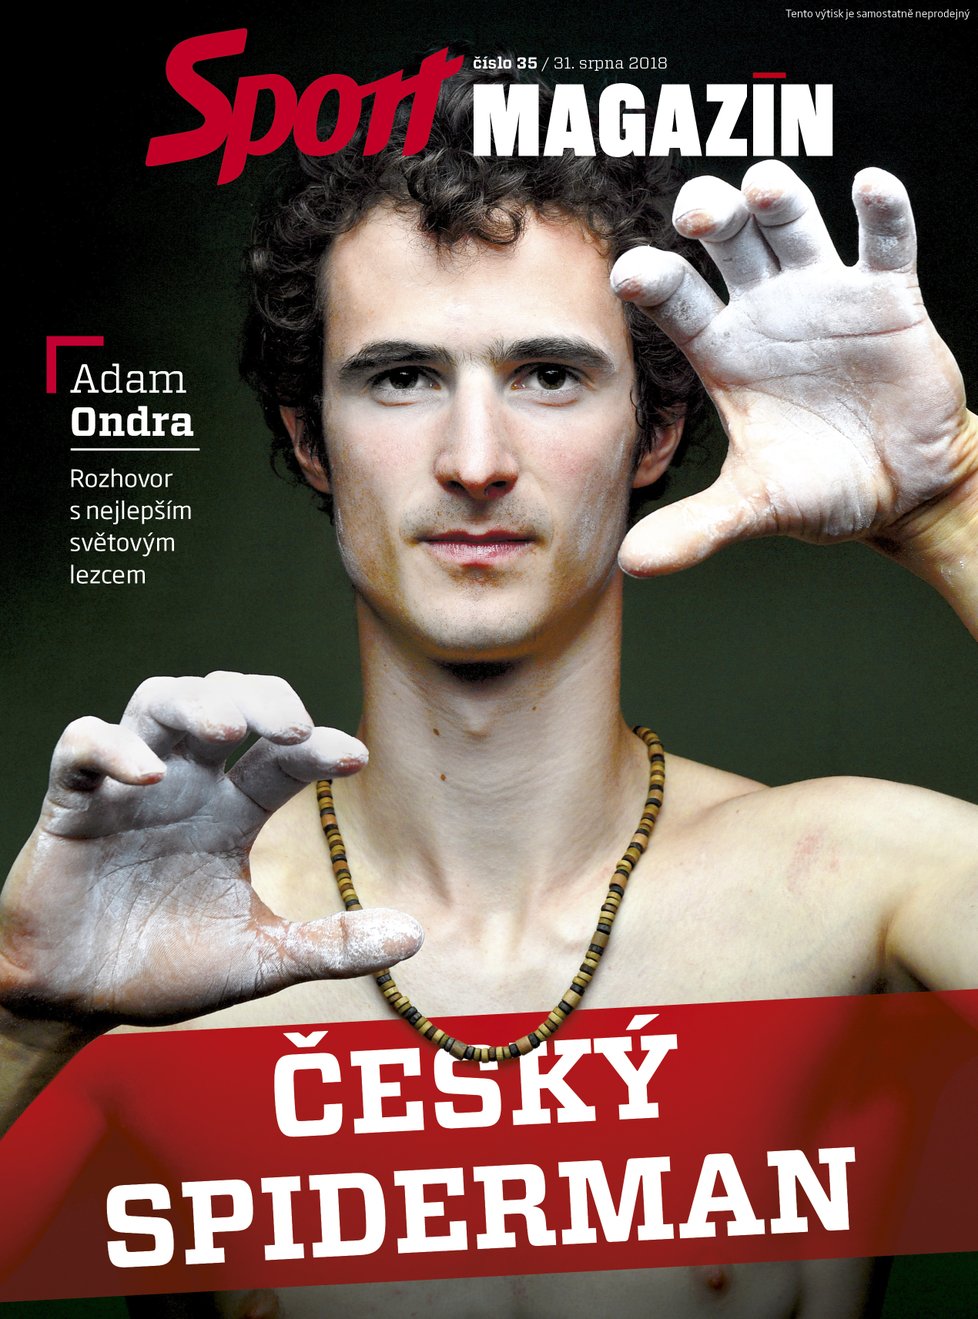 V pátečním Sport Magazínu najdete velký rozhovor s českým horolezcem Adamem Ondrou